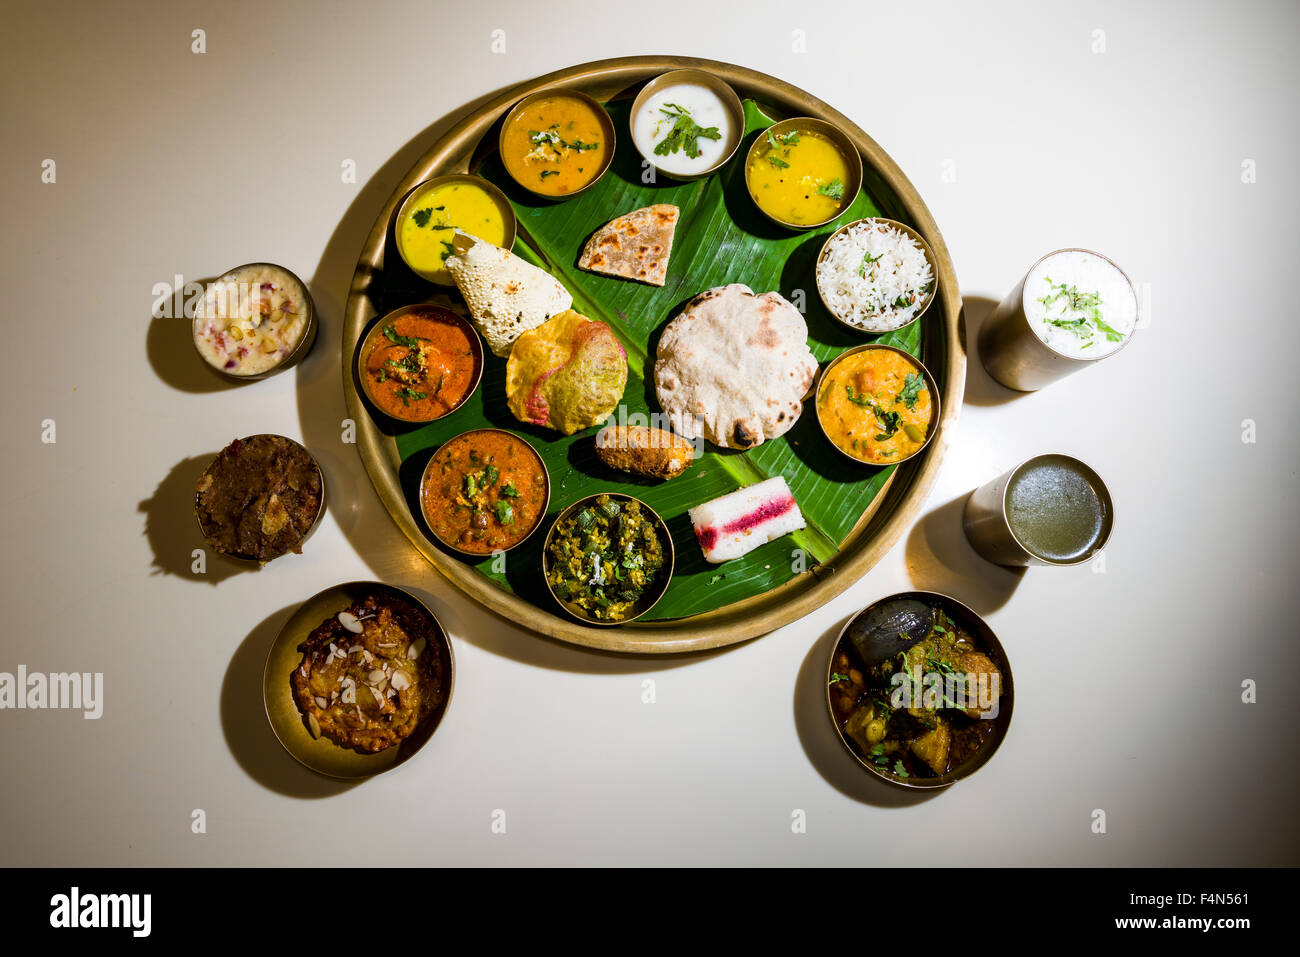 Die traditionelle Speise thali besteht in der Regel aus einigen verschiedenen pflanzlichen oder nicht, Gemüse, Quark, Reis, Brot, papadam und Stockfoto